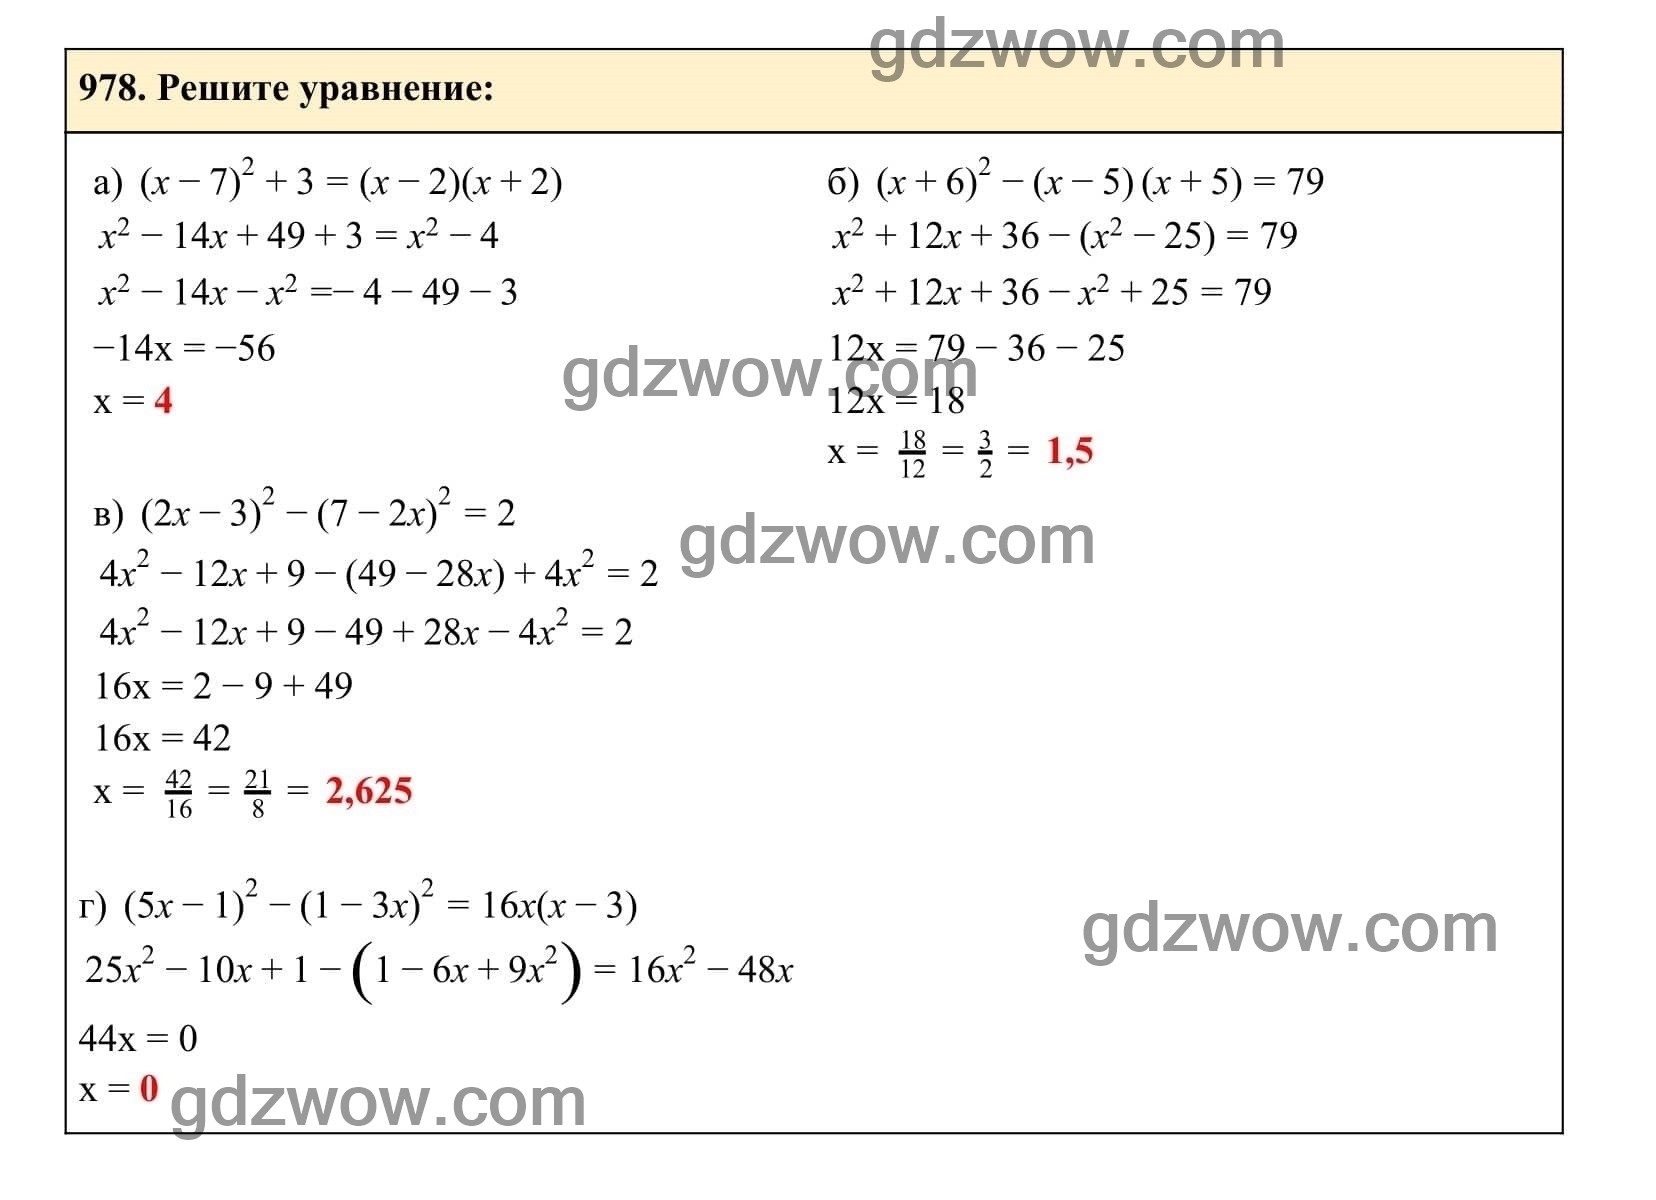 Упражнение 978 - ГДЗ по Алгебре 7 класс Учебник Макарычев (решебник) - GDZwow